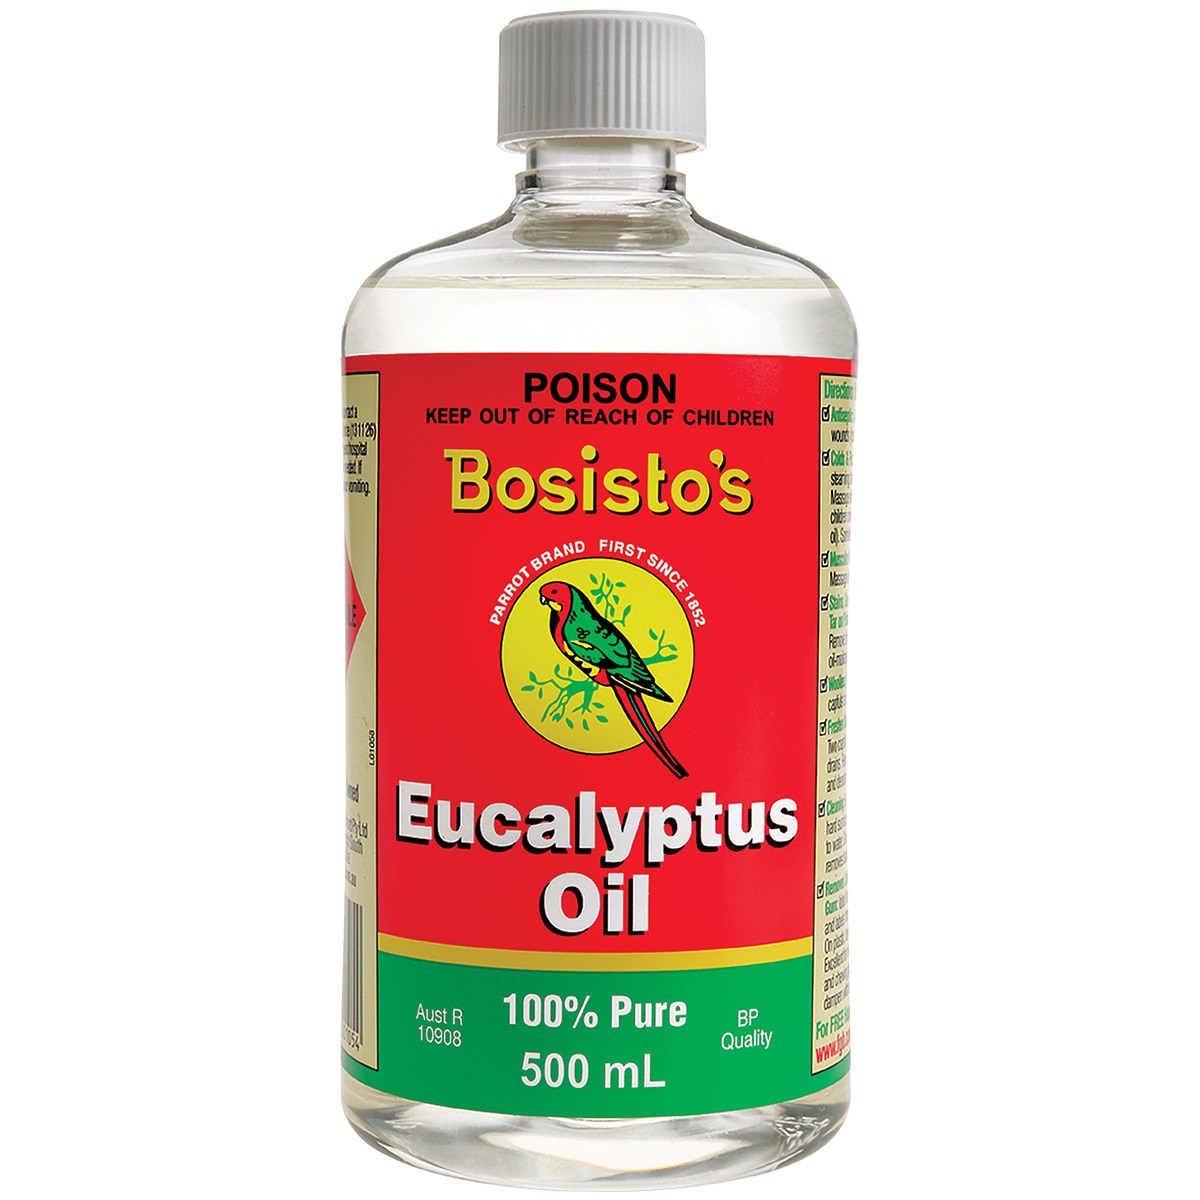 Bosisto's Eucalyptus oil